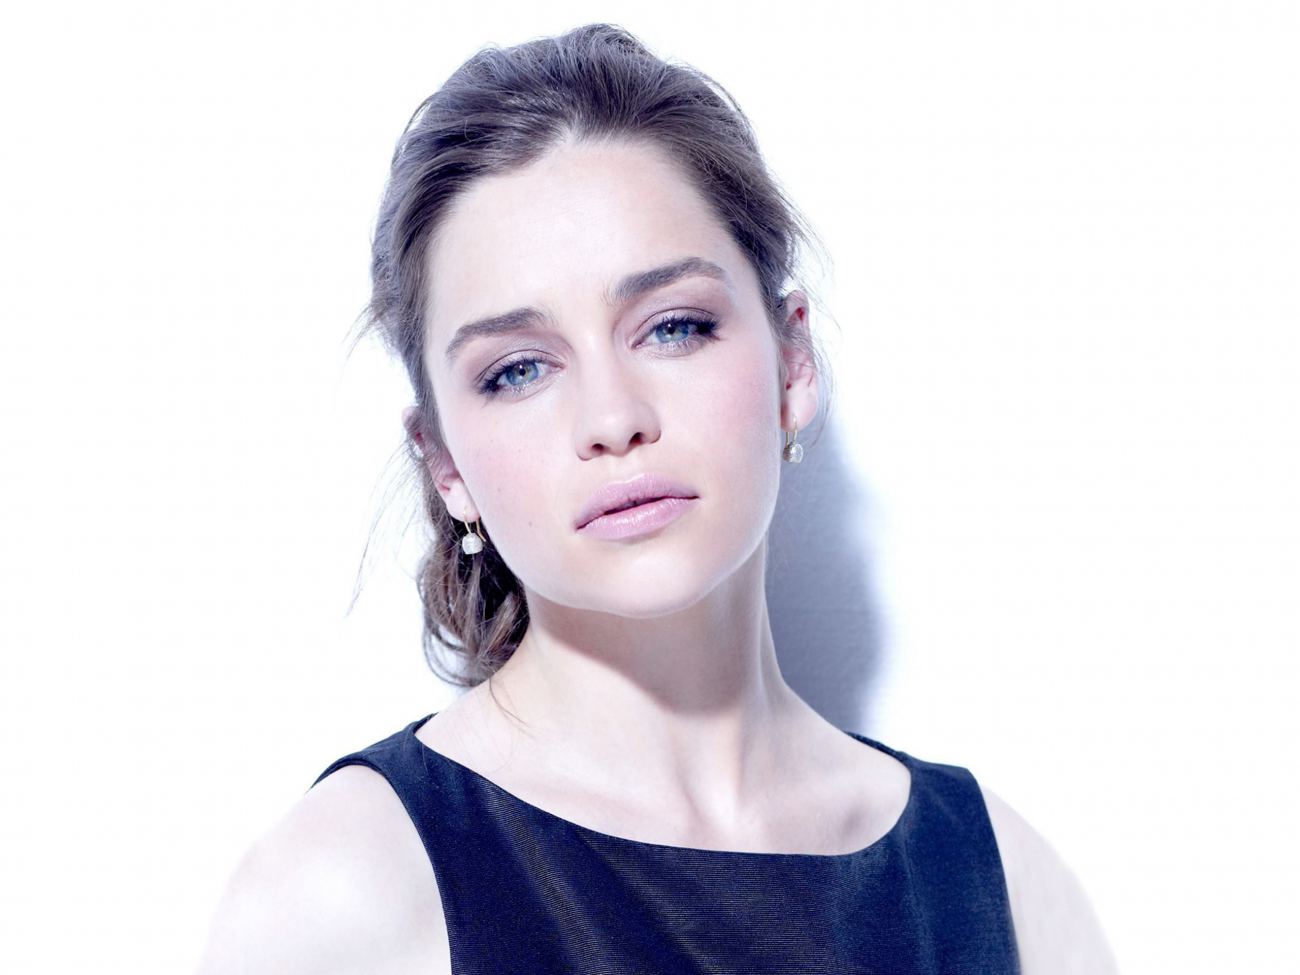 Stunning Emilia Clarke Wide HD Wallpaper